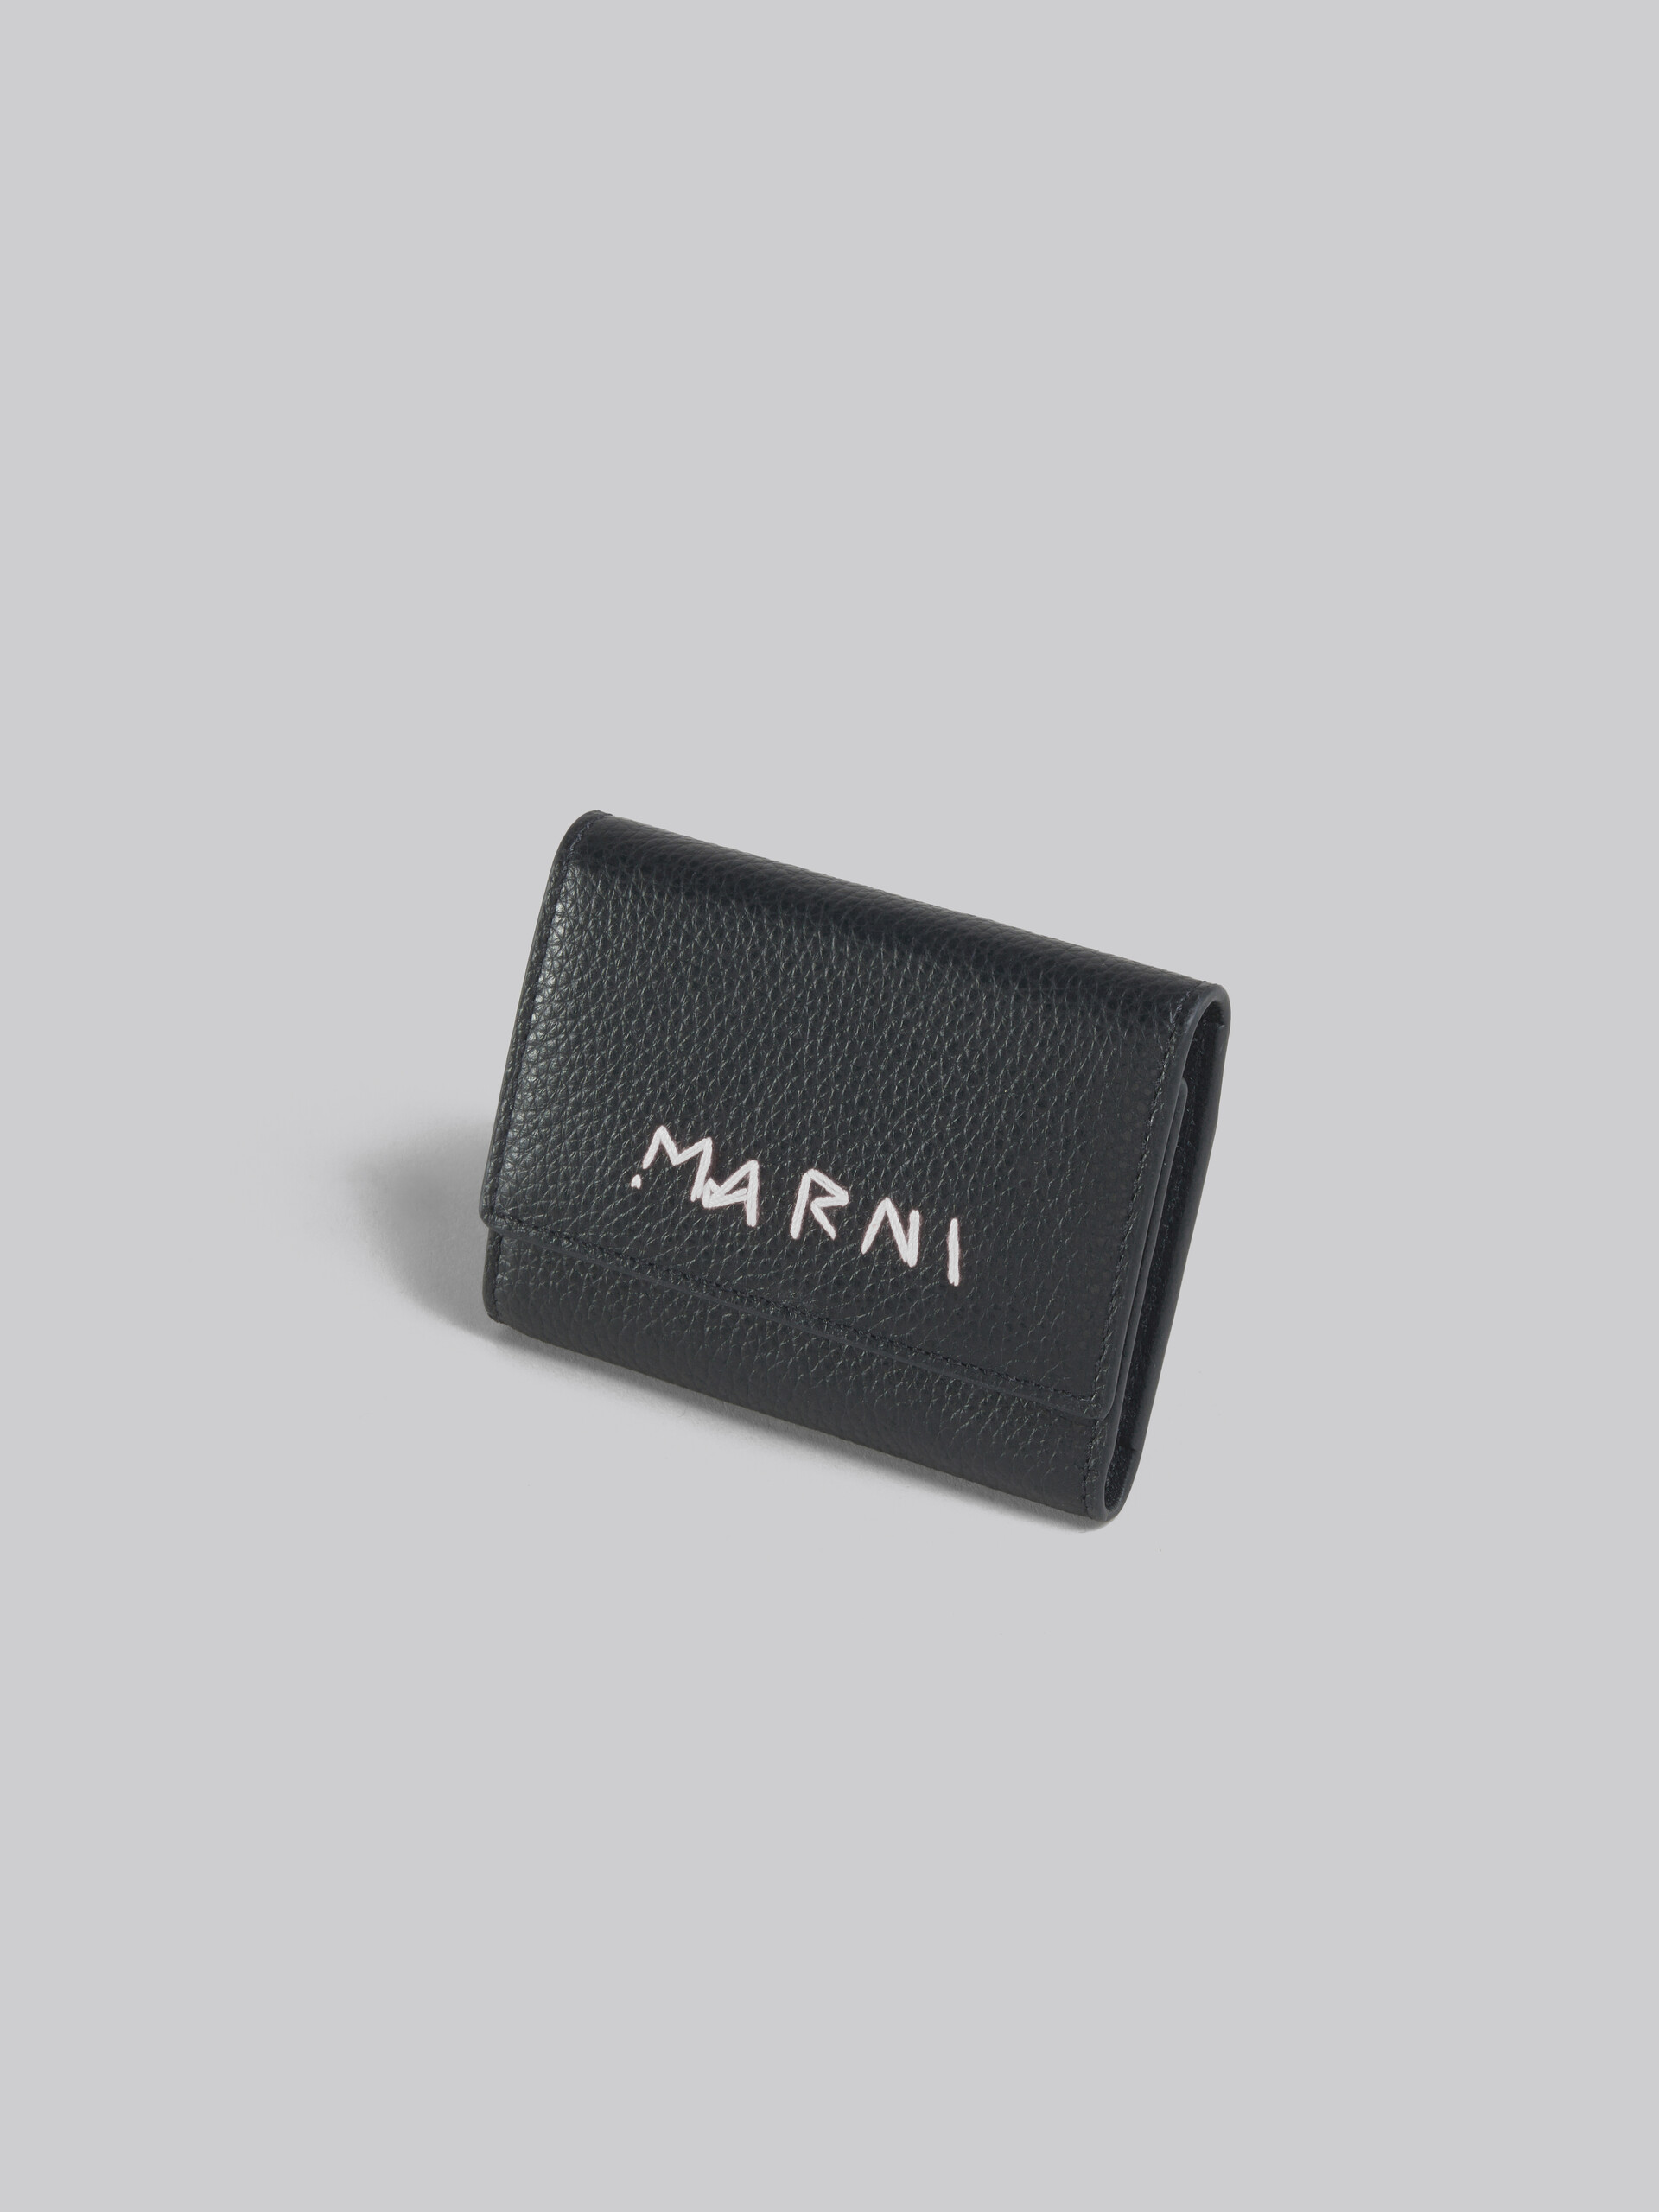 Llavero de piel negra con remiendo Marni - Llavero - Image 3